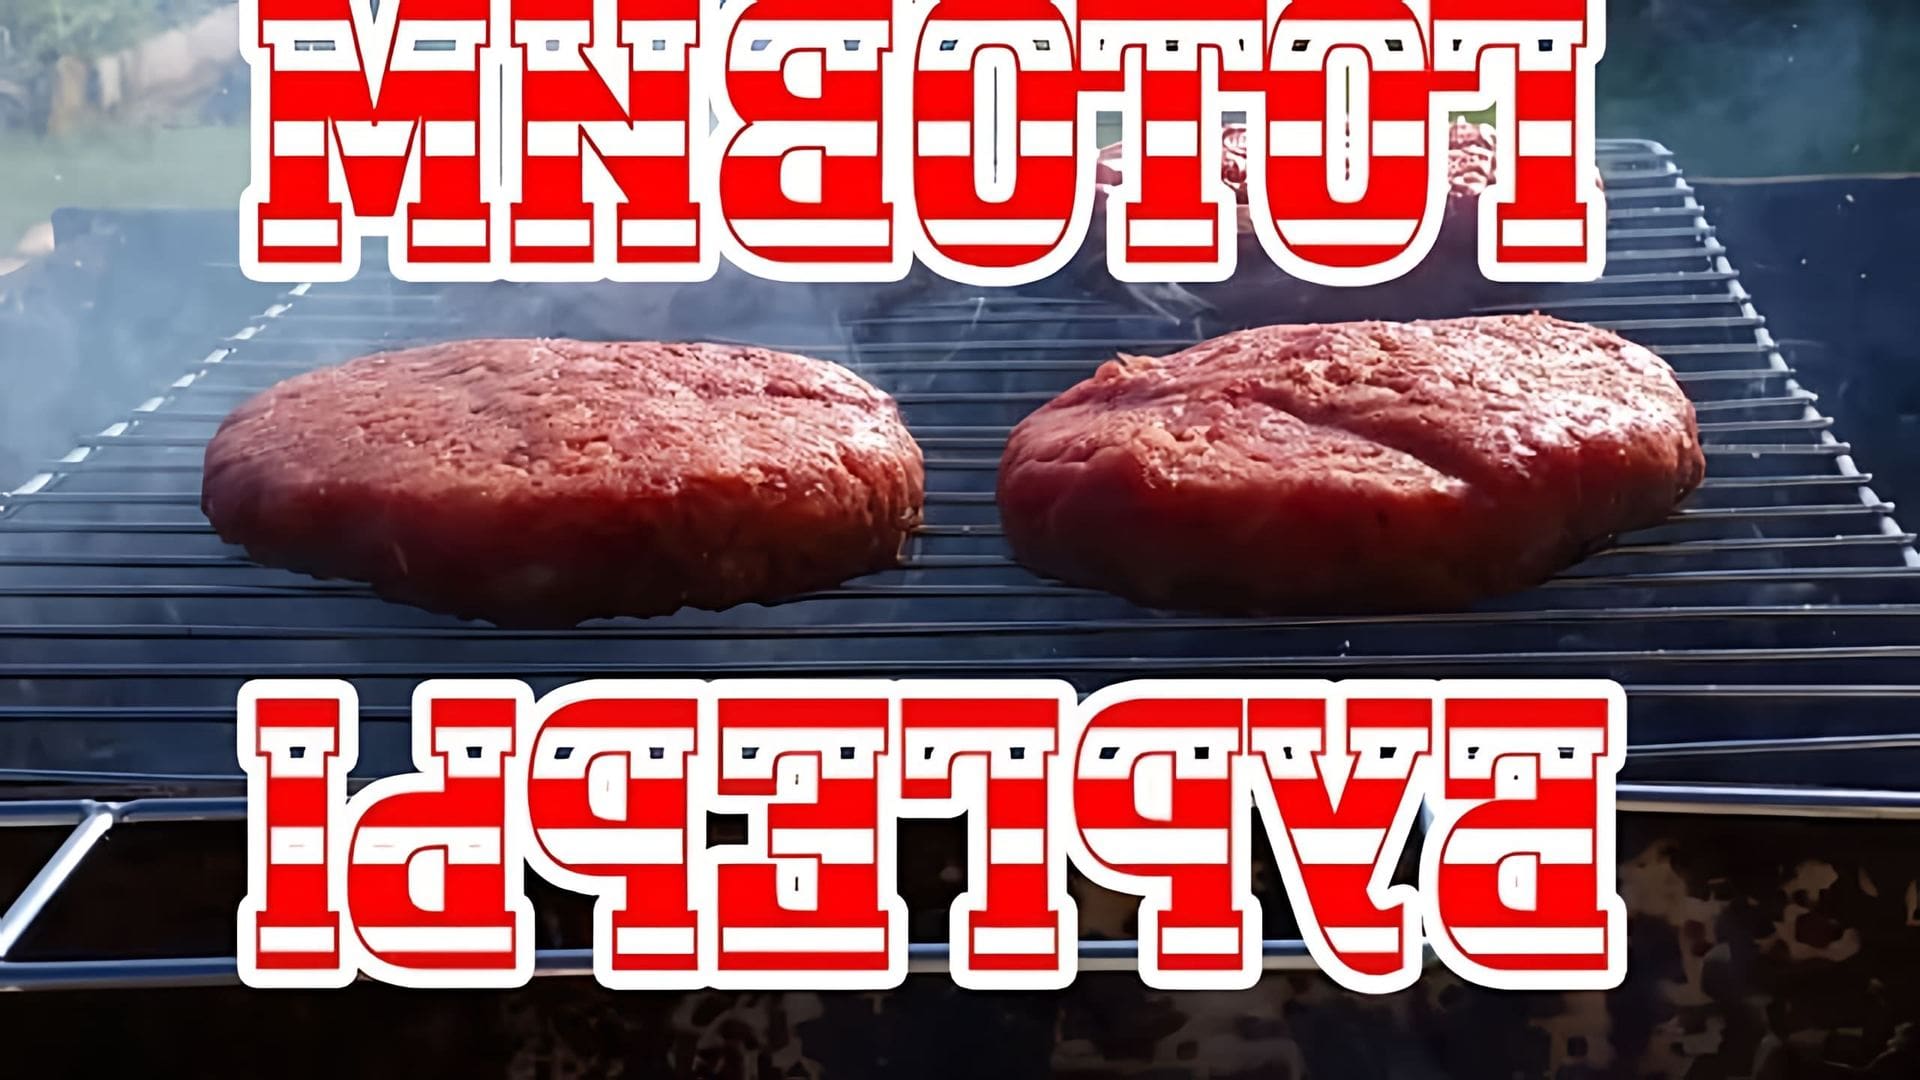 В этом видео-ролике демонстрируется процесс приготовления бургера из говядины Black Angus на углях